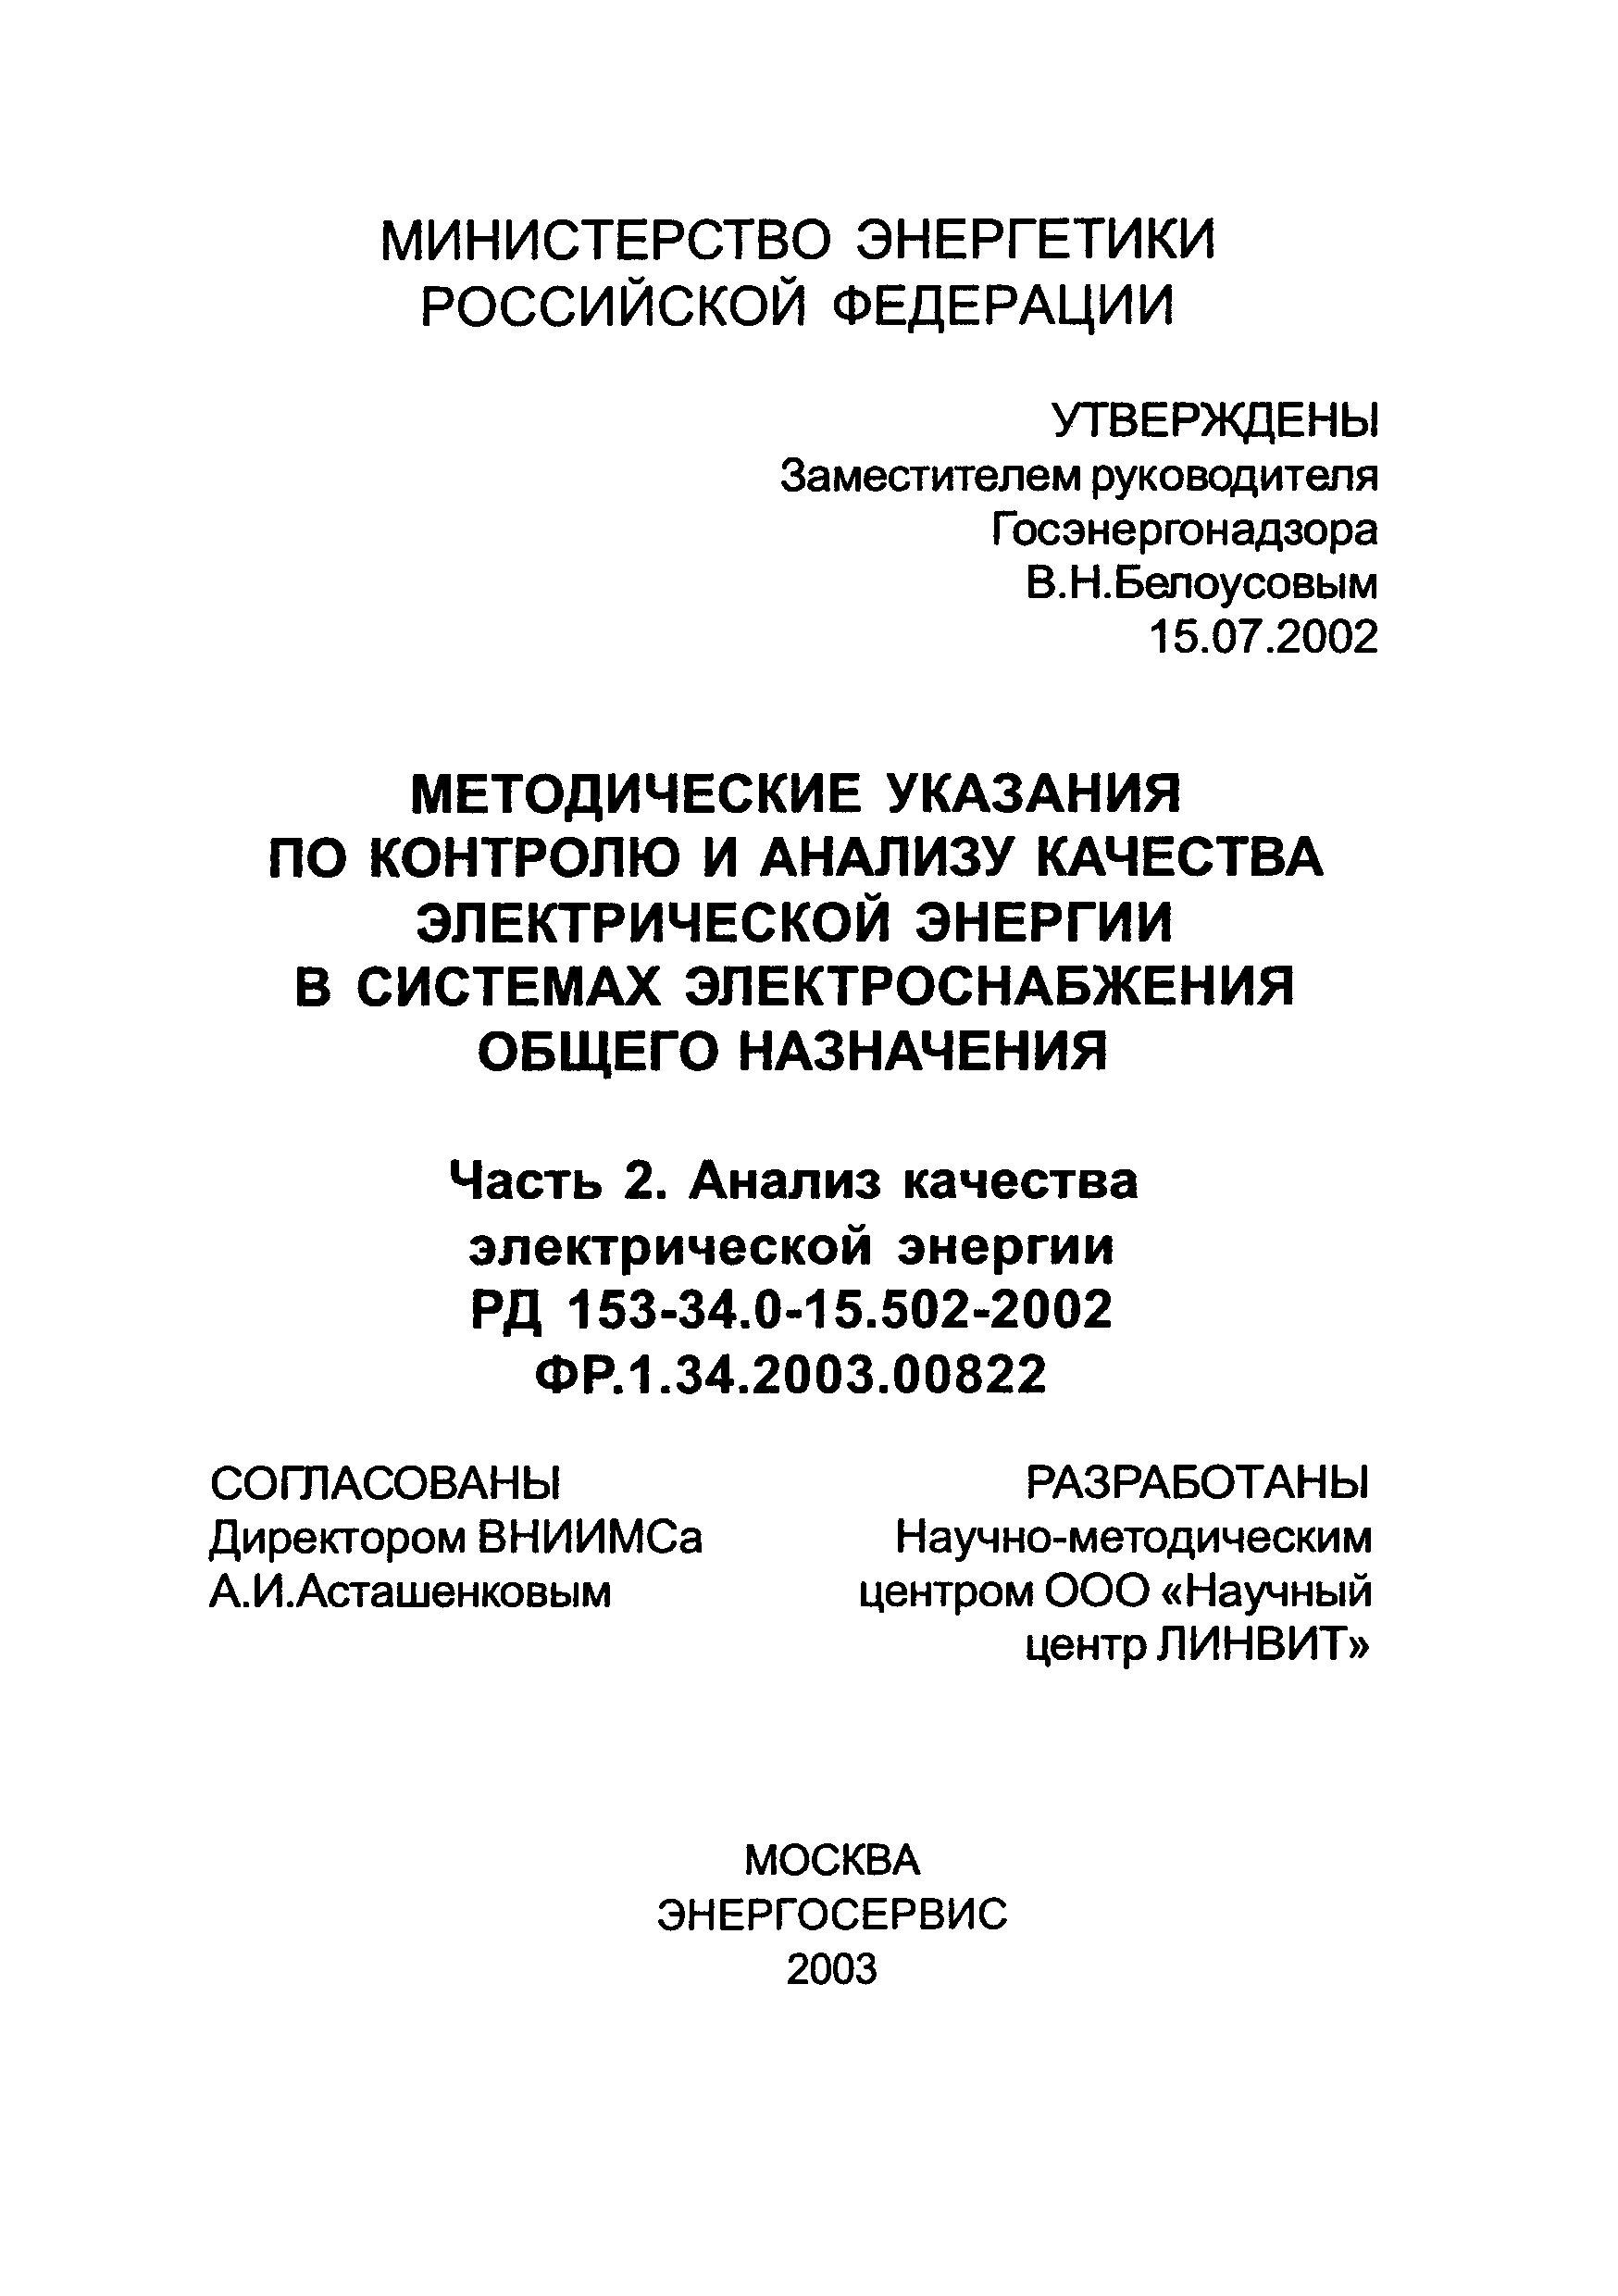 РД 153-34.0-15.502-2002